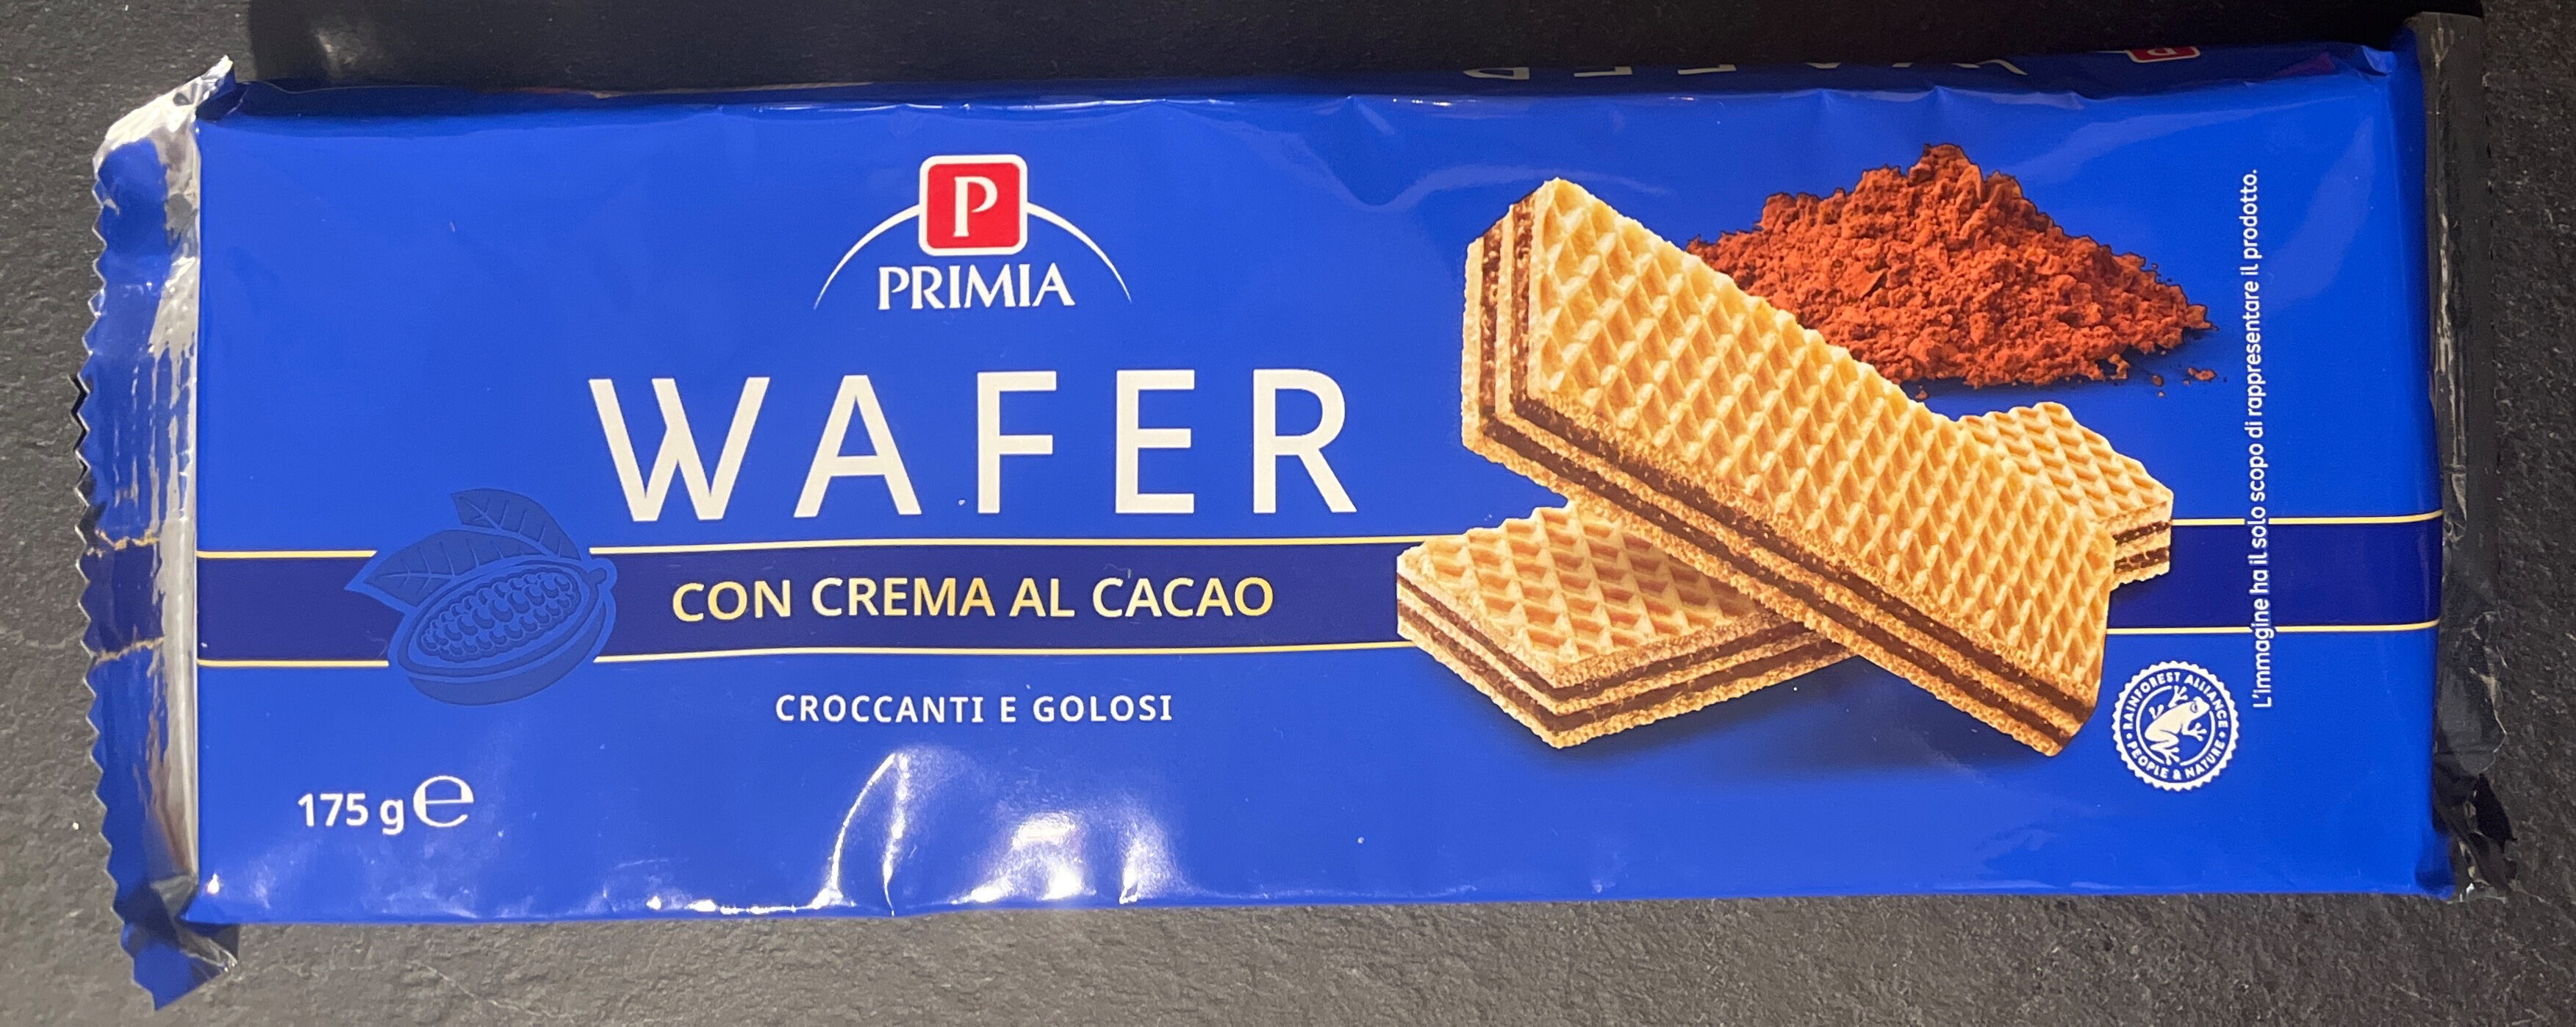 Wafer con crema al cacao - Prodotto